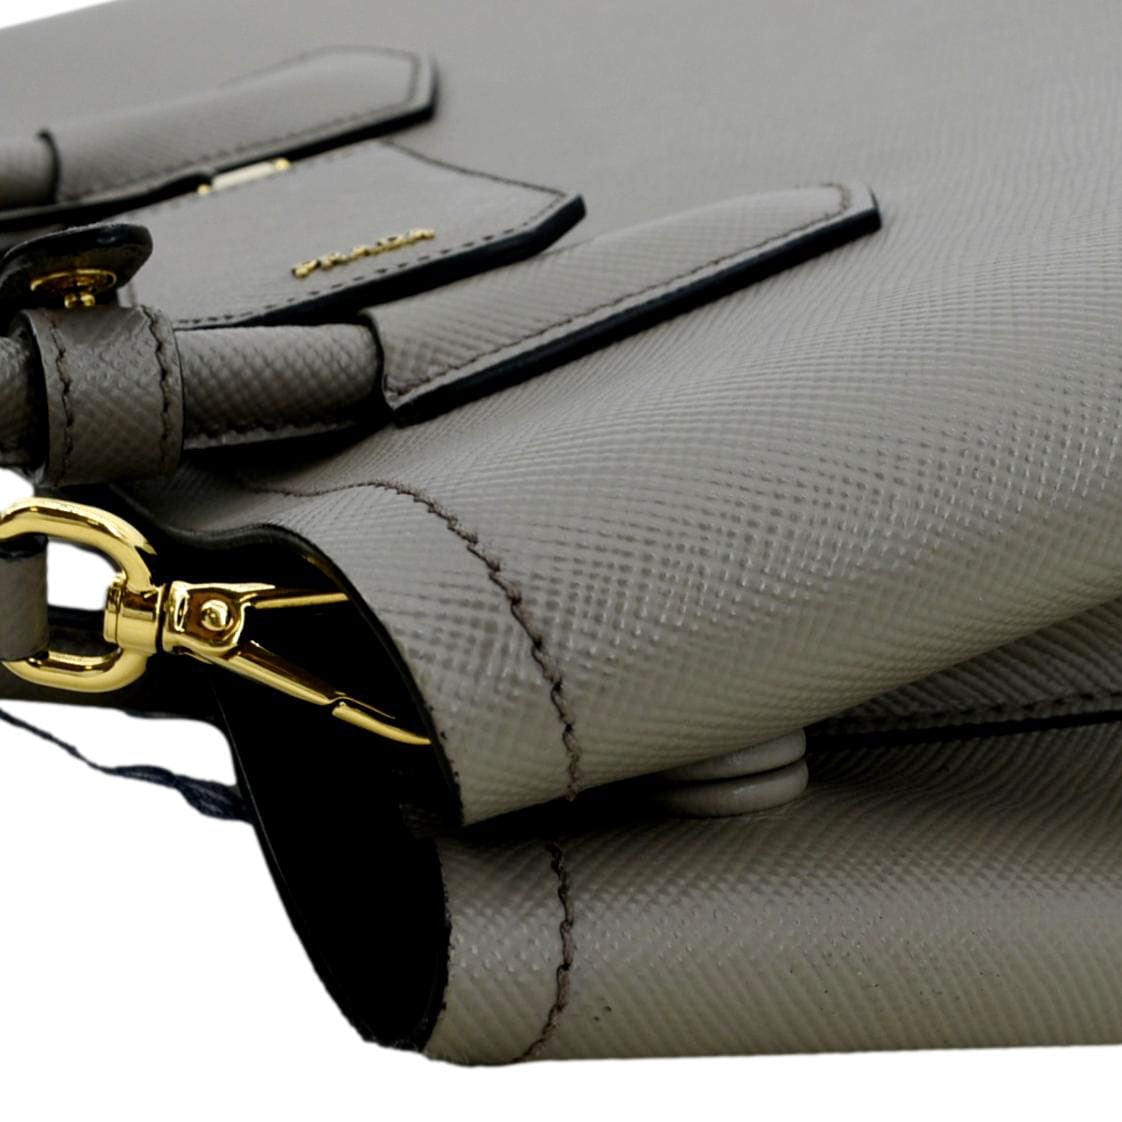 Prada Vintage - Saffiano Leather Esplanade Tote Bag - Black